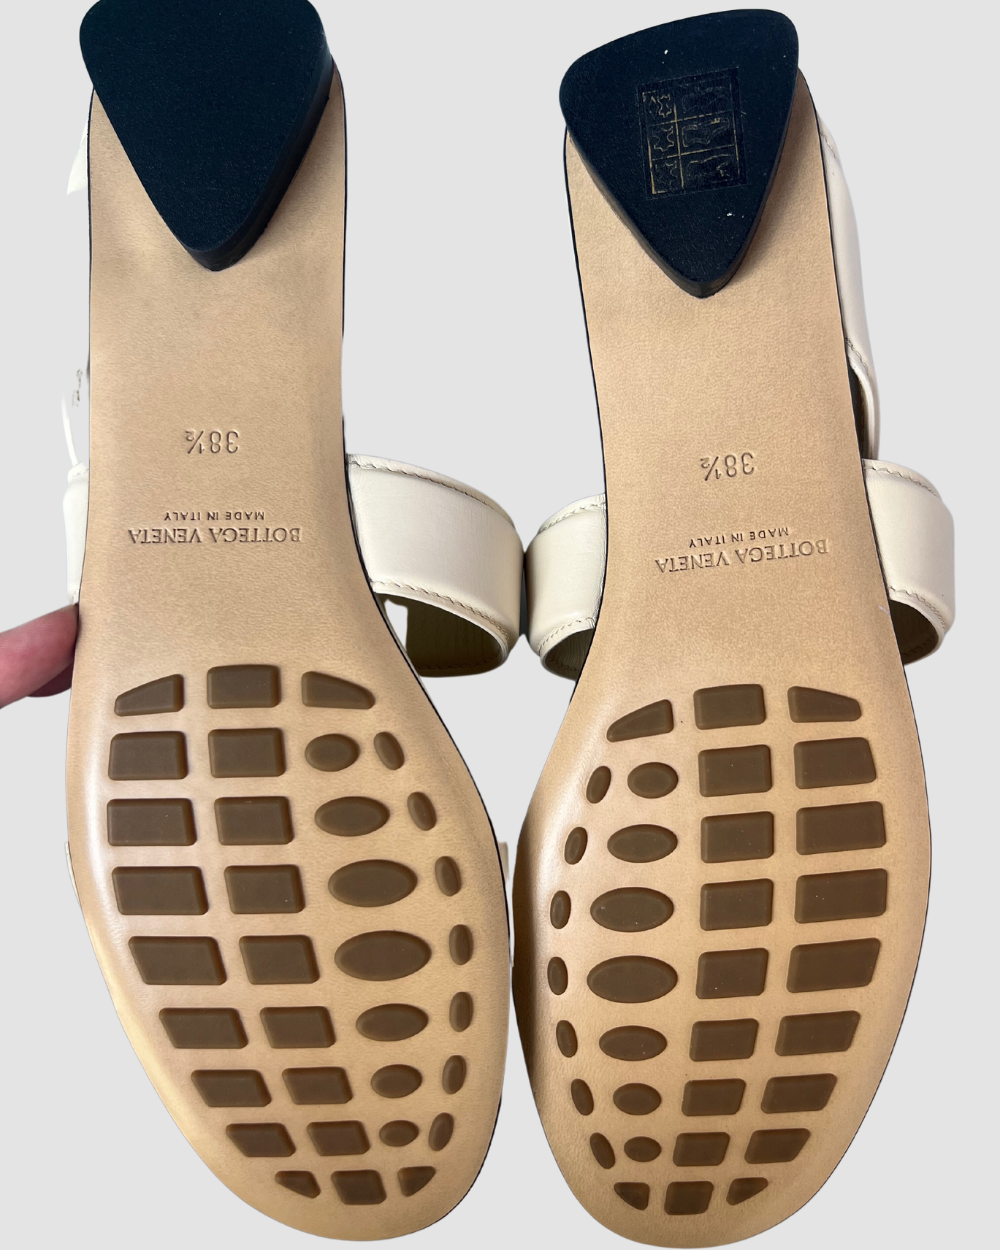 Bottega Veneta Beige Leather Sandals, 38.5